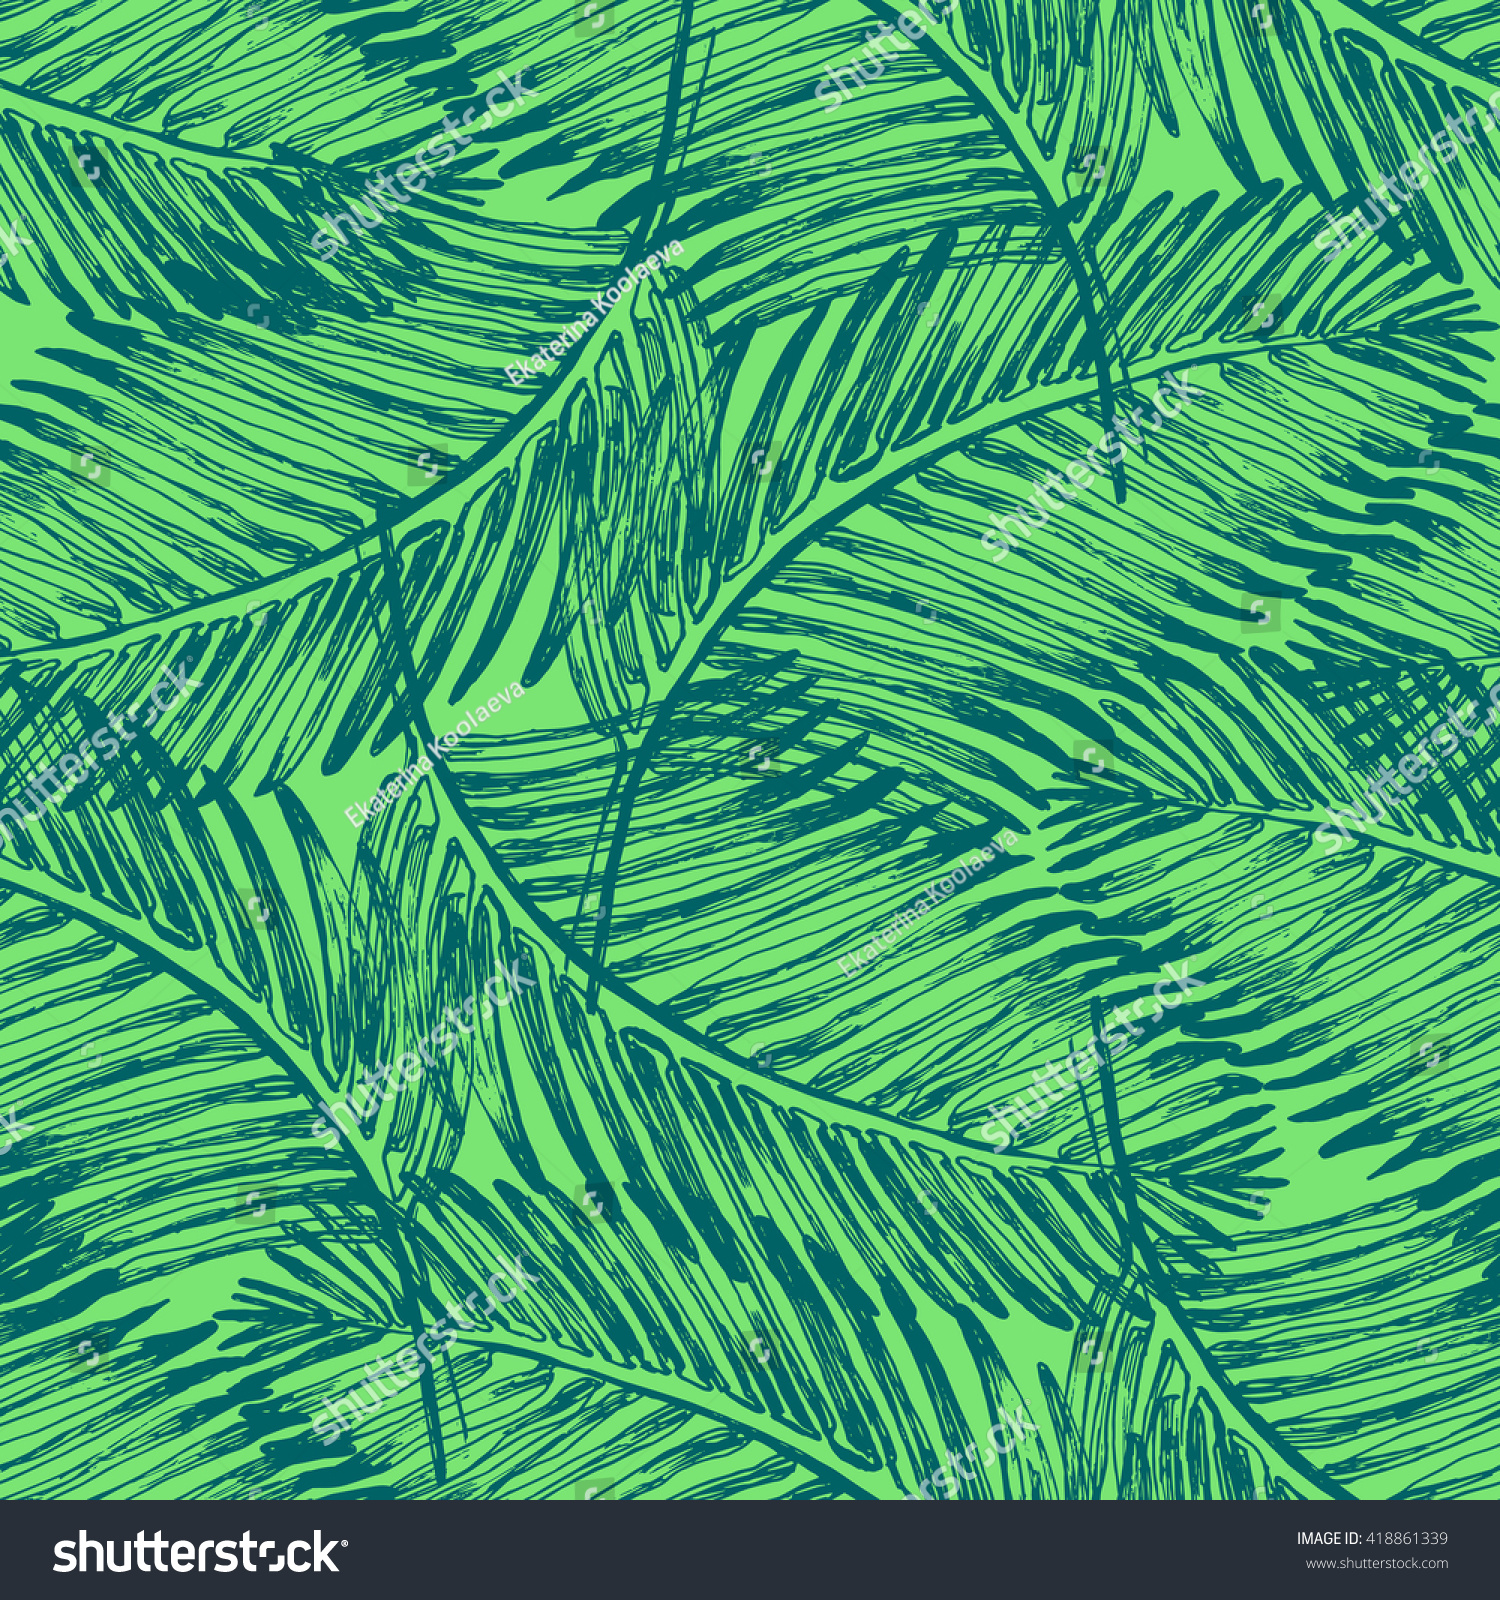 ヤシの葉に熱帯ジャングルの植物のイラスト柄 ビンテージスタイルのシームレスなベクター壁紙 緑の色の背景 熱帯柄 のベクター画像素材 ロイヤリティフリー